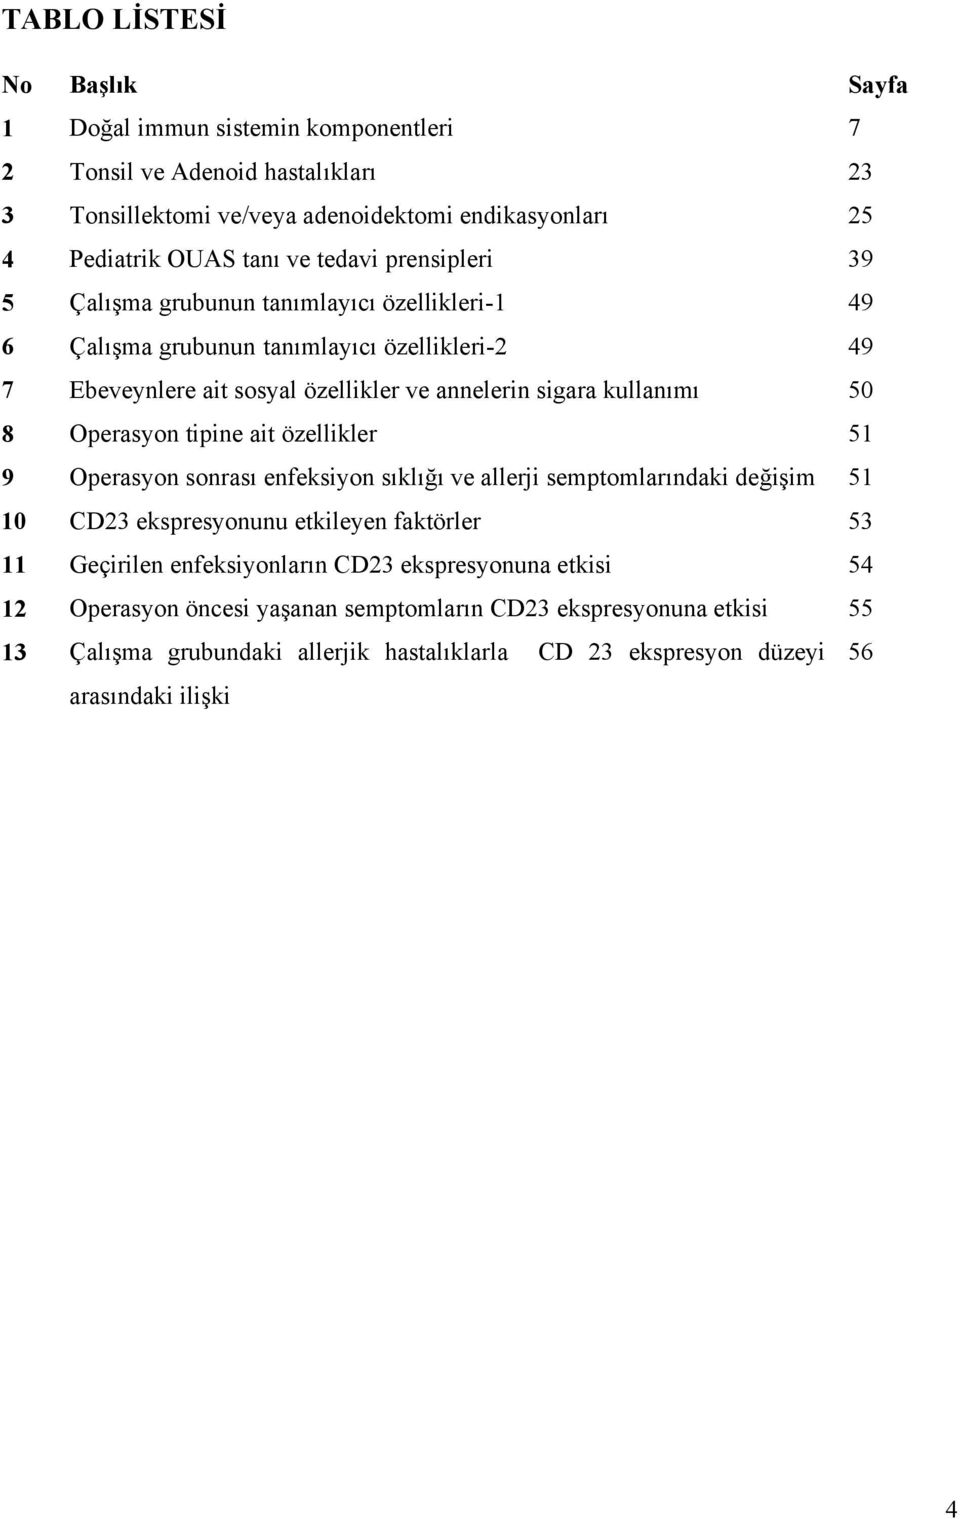 8 Operasyon tipine ait özellikler 51 9 Operasyon sonrası enfeksiyon sıklığı ve allerji semptomlarındaki değişim 51 10 CD23 ekspresyonunu etkileyen faktörler 53 11 Geçirilen